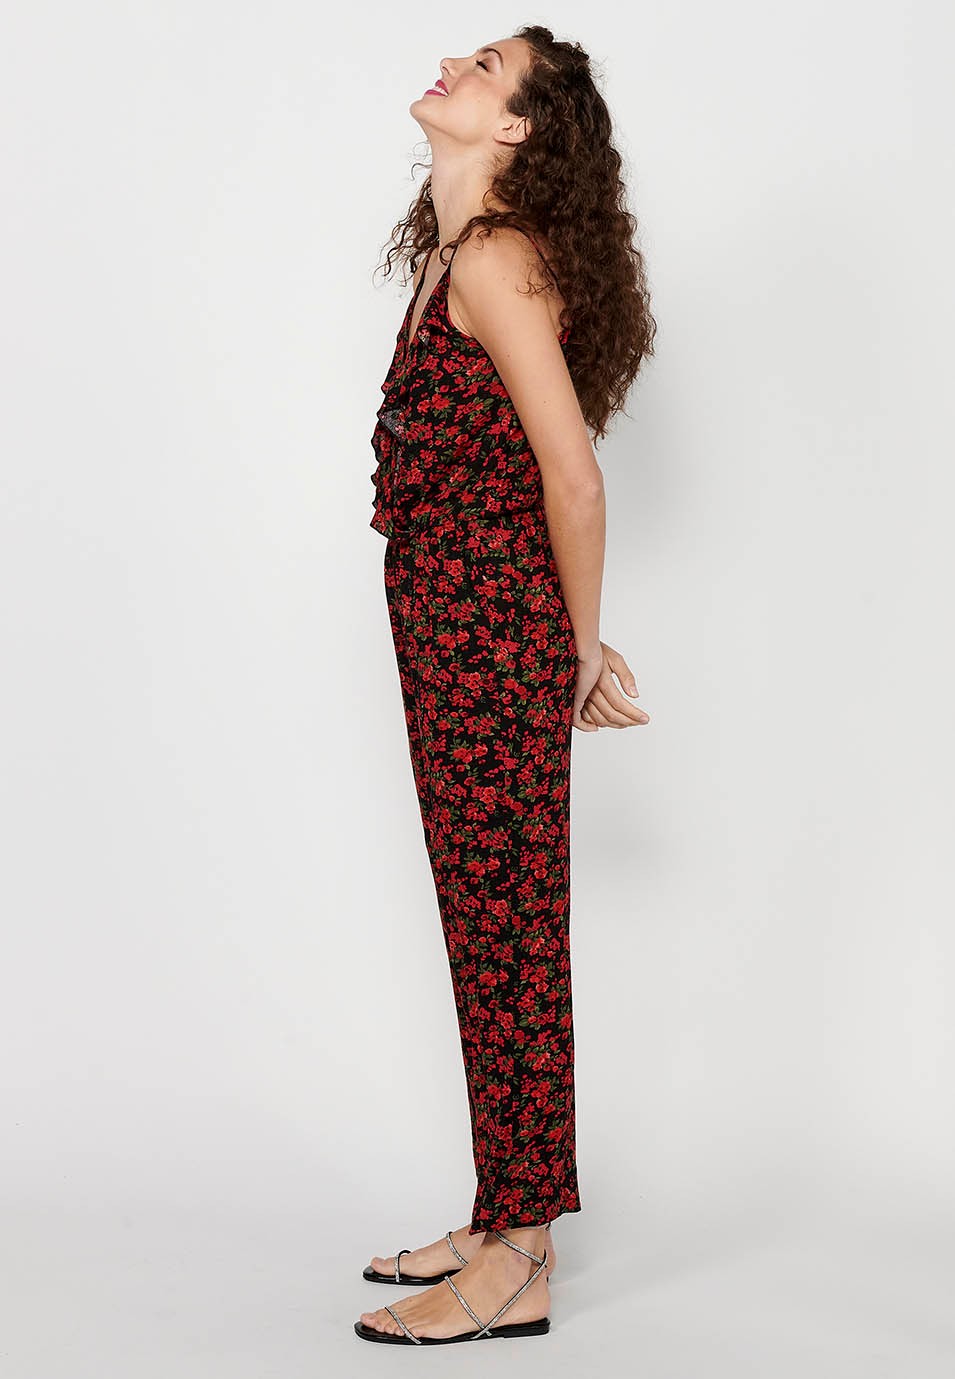 Pantalon habillé long à bretelles réglables avec taille caoutchoutée et imprimé floral rouge pour Femme 6